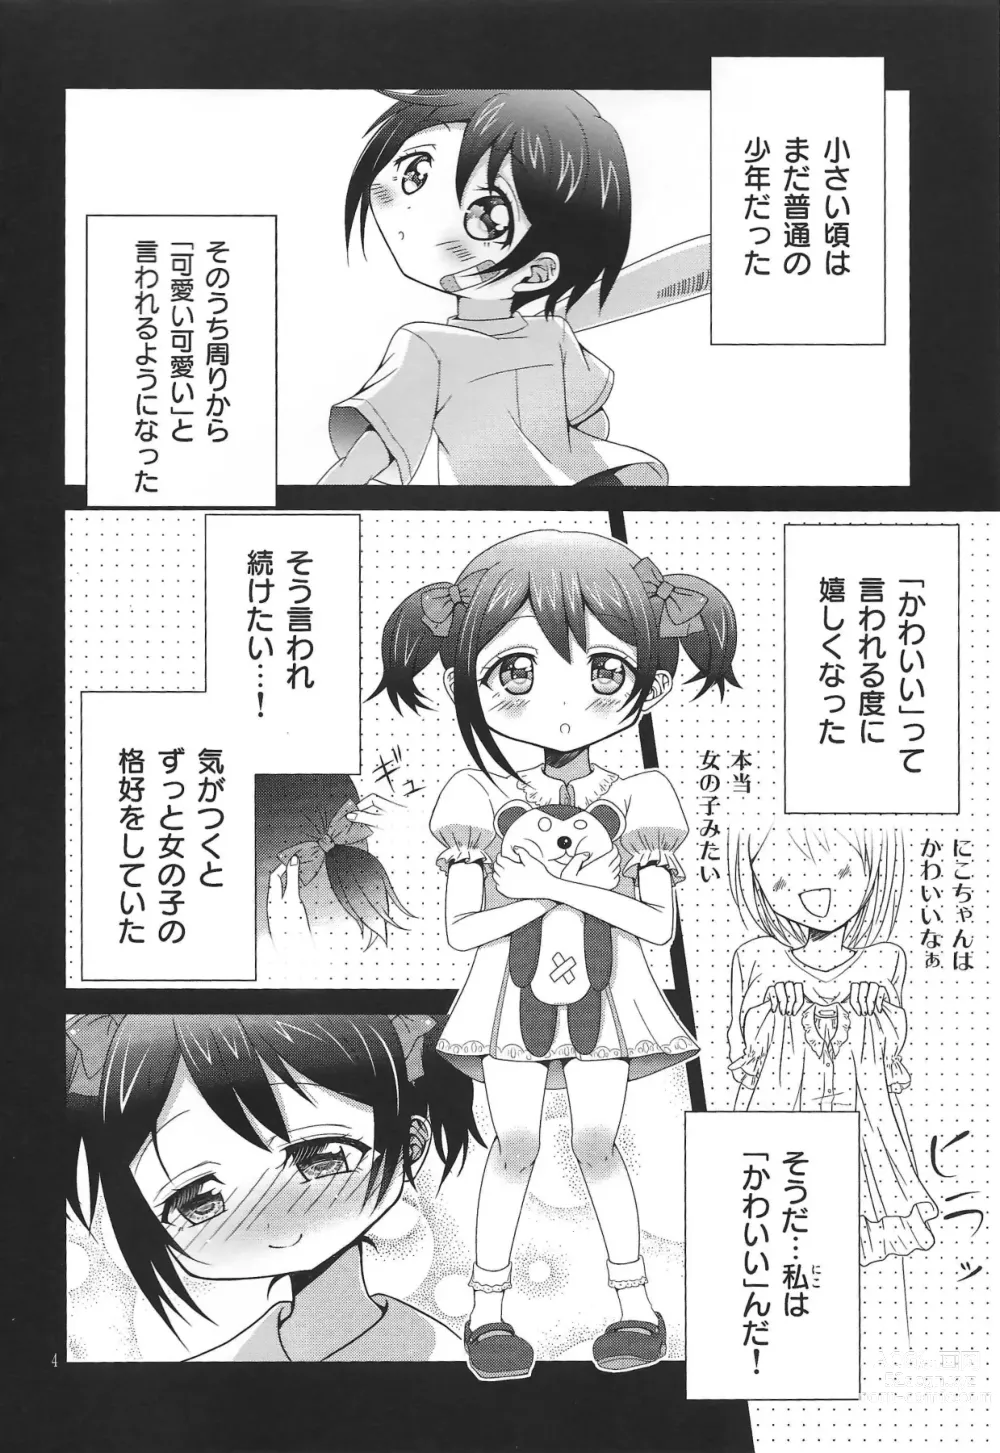 Page 3 of doujinshi Usotsuki Nico 2